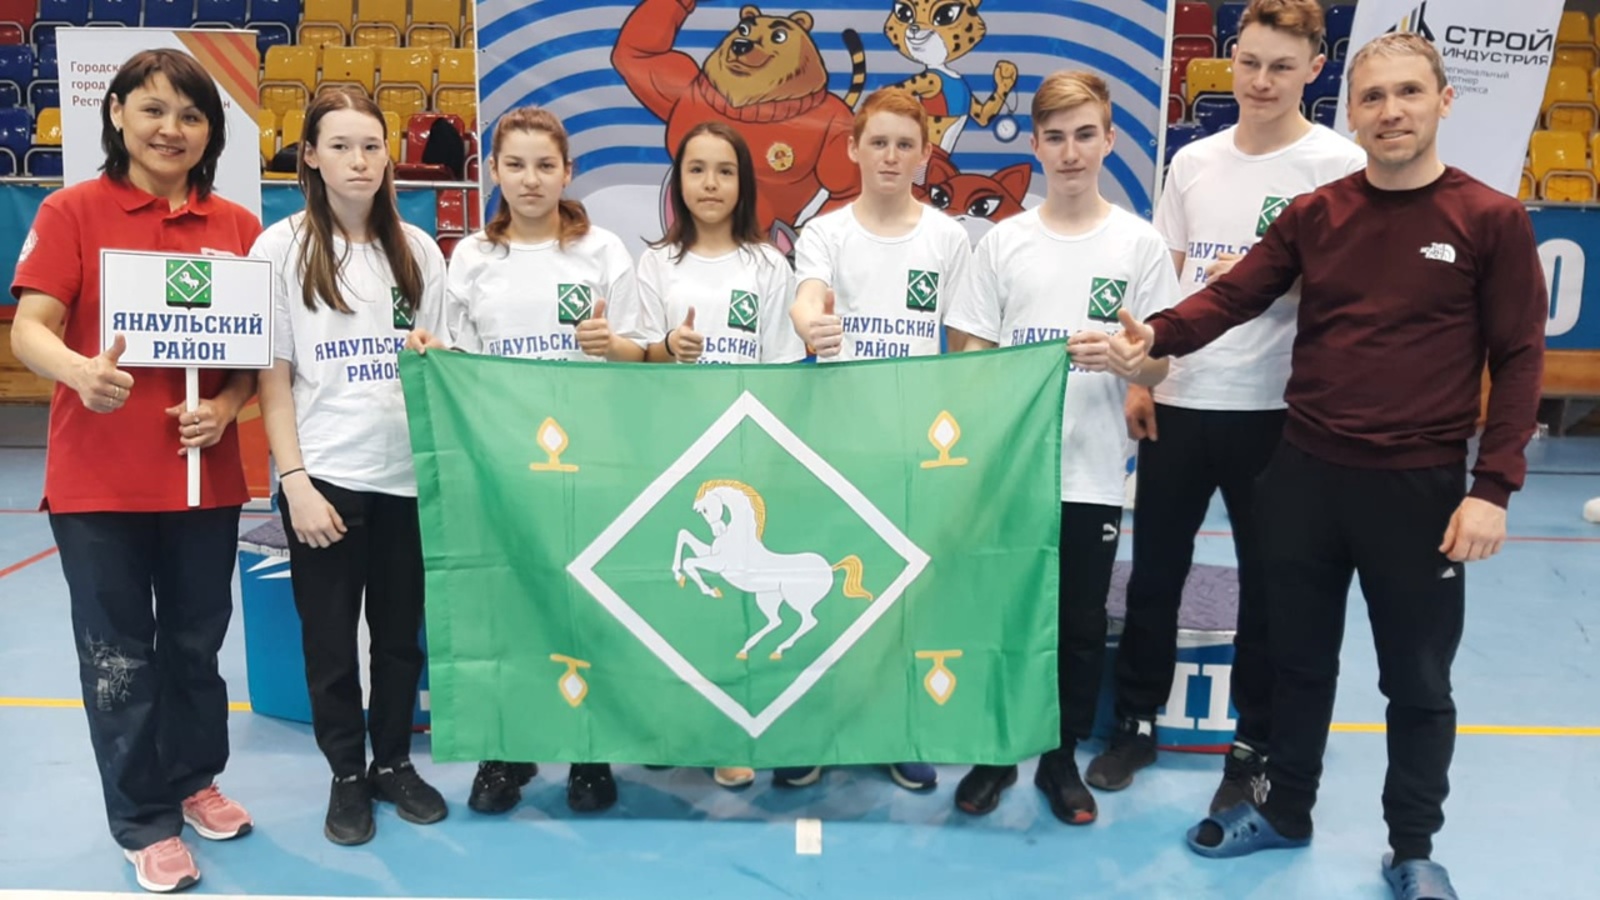 Янаульская сборная стала призером зимнего фестиваля ВФСК ГТО Башкирии